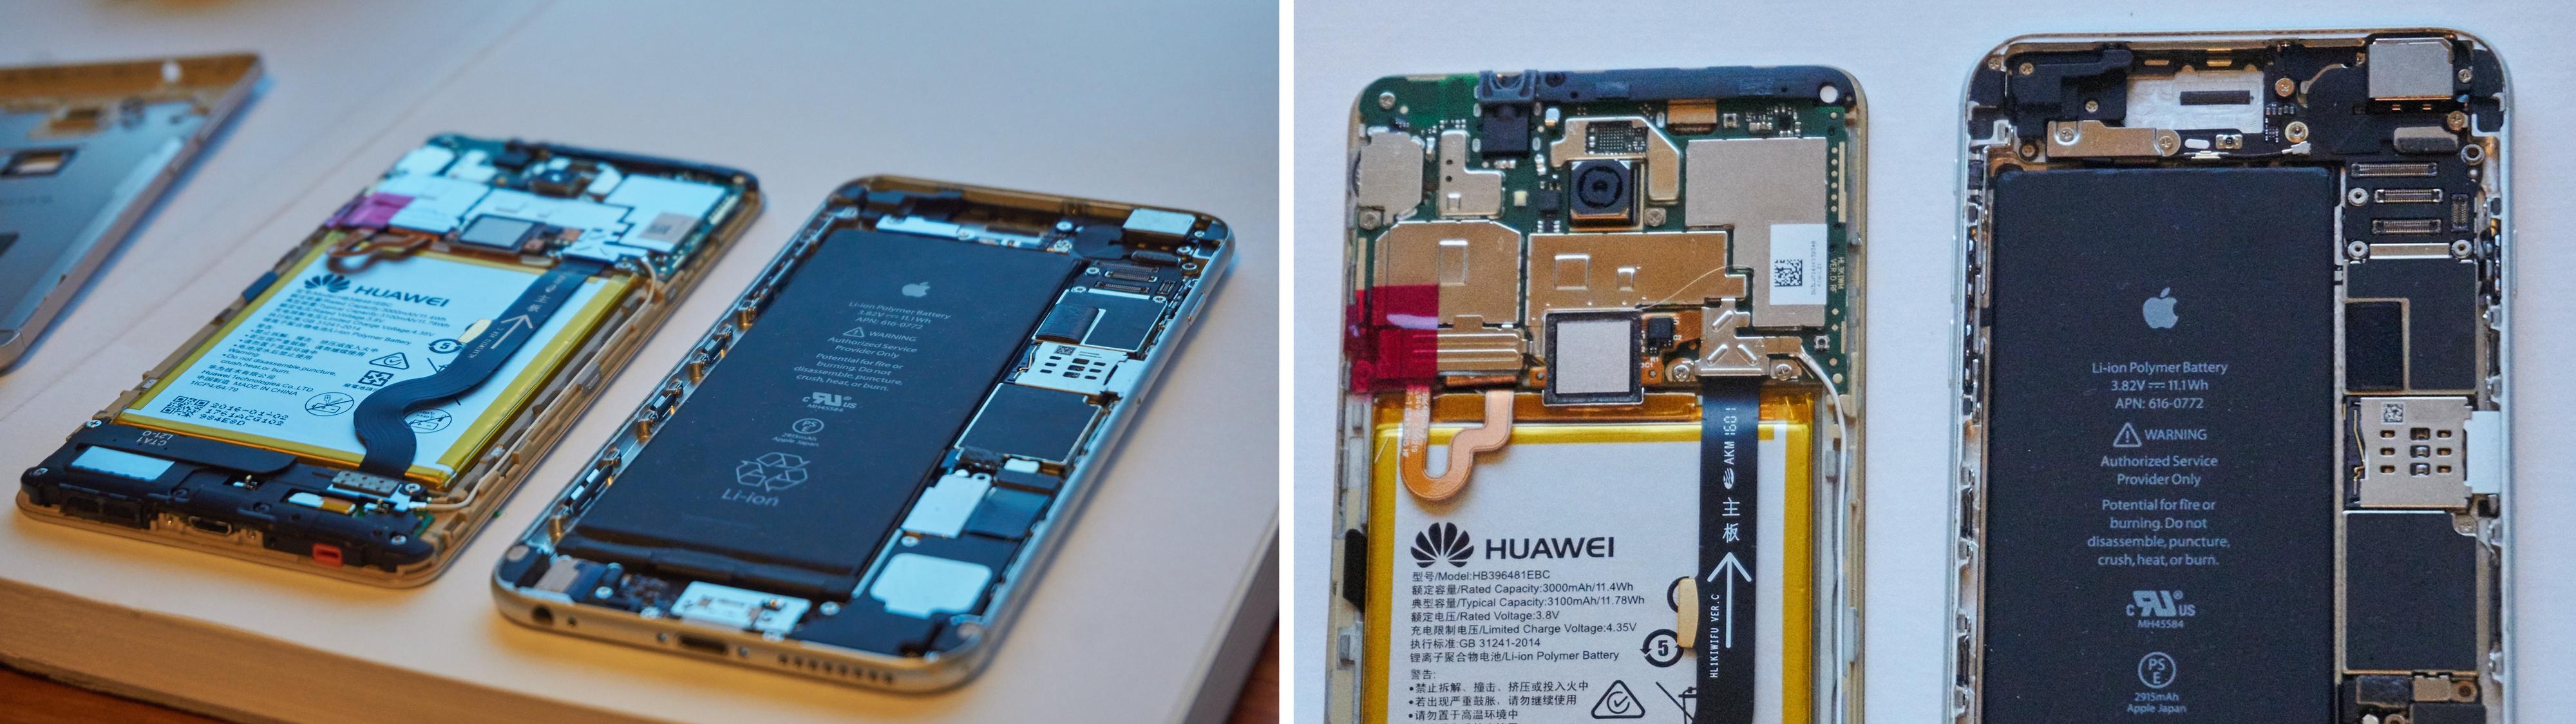 Apple har et betydelig mer stilrent design på innsiden enn Huawei, og legger også opp til at telefonene skal være enkle å reparere.